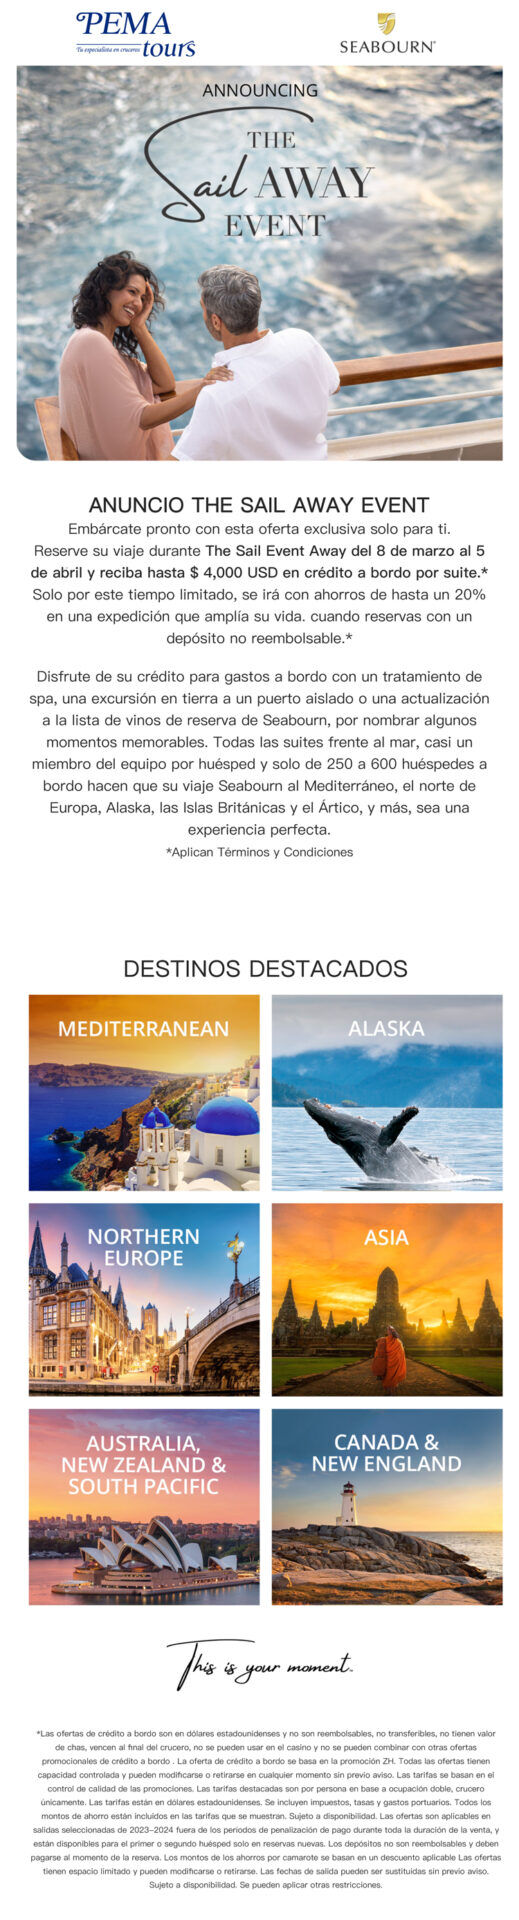 Promoción The Sail Away Event descripción y destinos que participan Mediterráneo, Alaska, Norte de Europa, Asia, Australia, Canadá